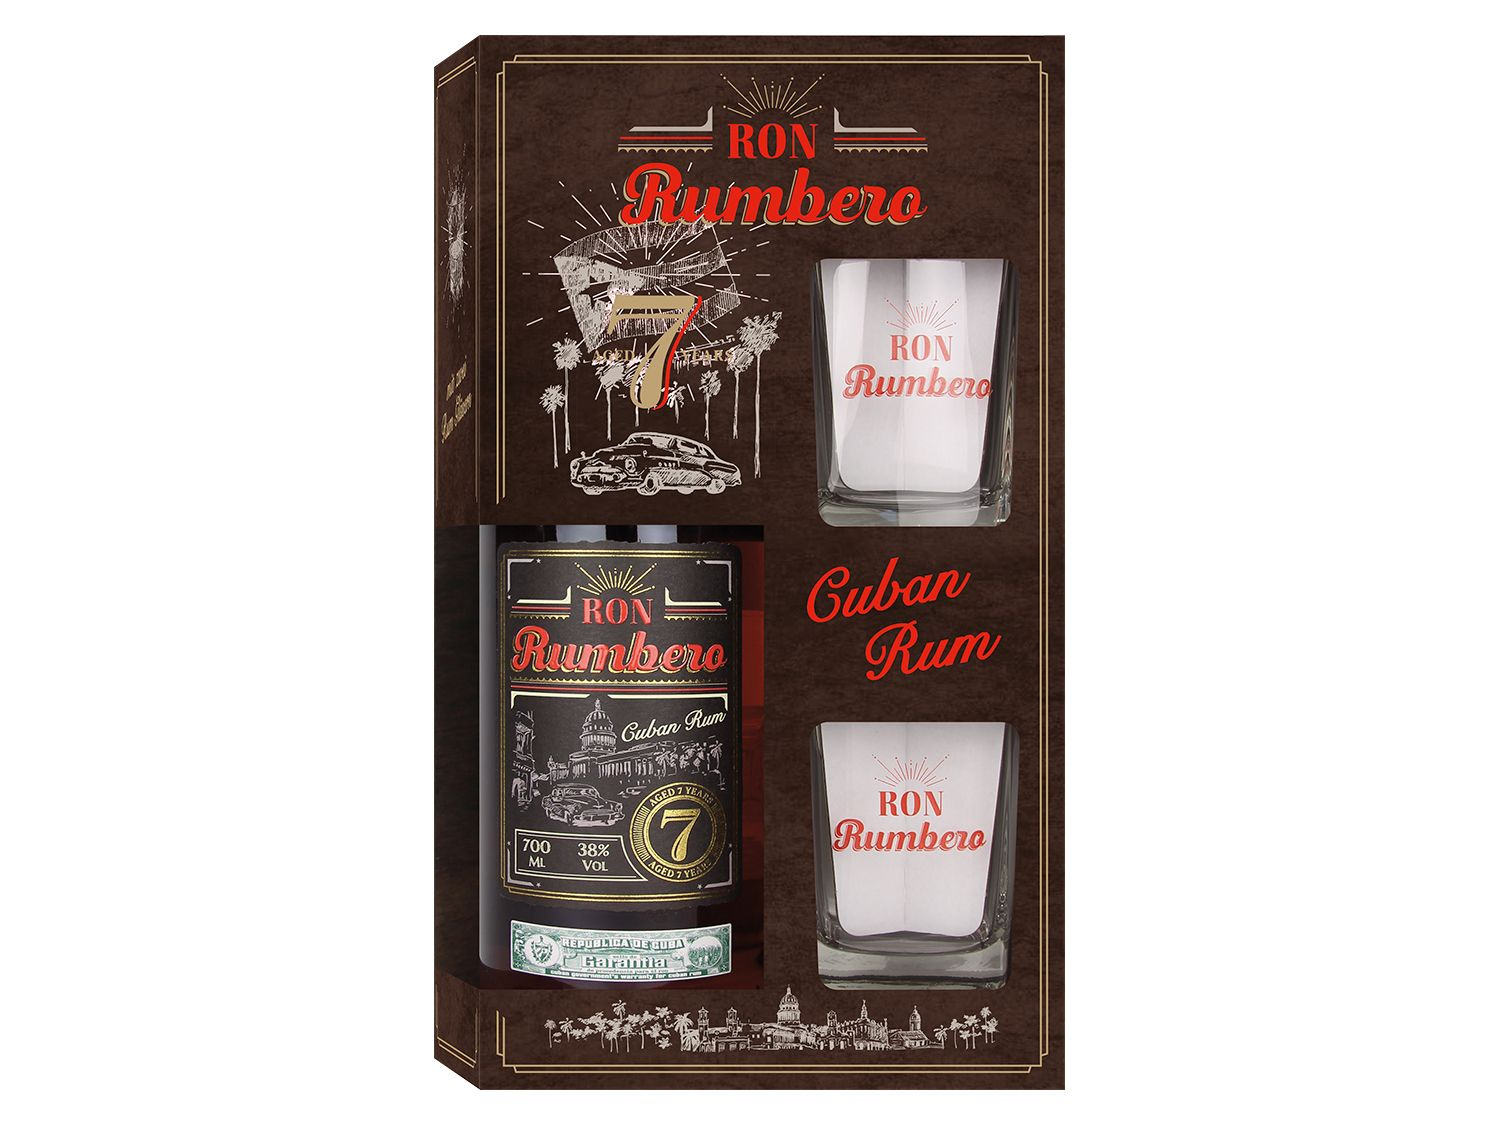 Ron Rumbero | 2 38% Gläsern Rum mit Jahre LIDL 7 Vol